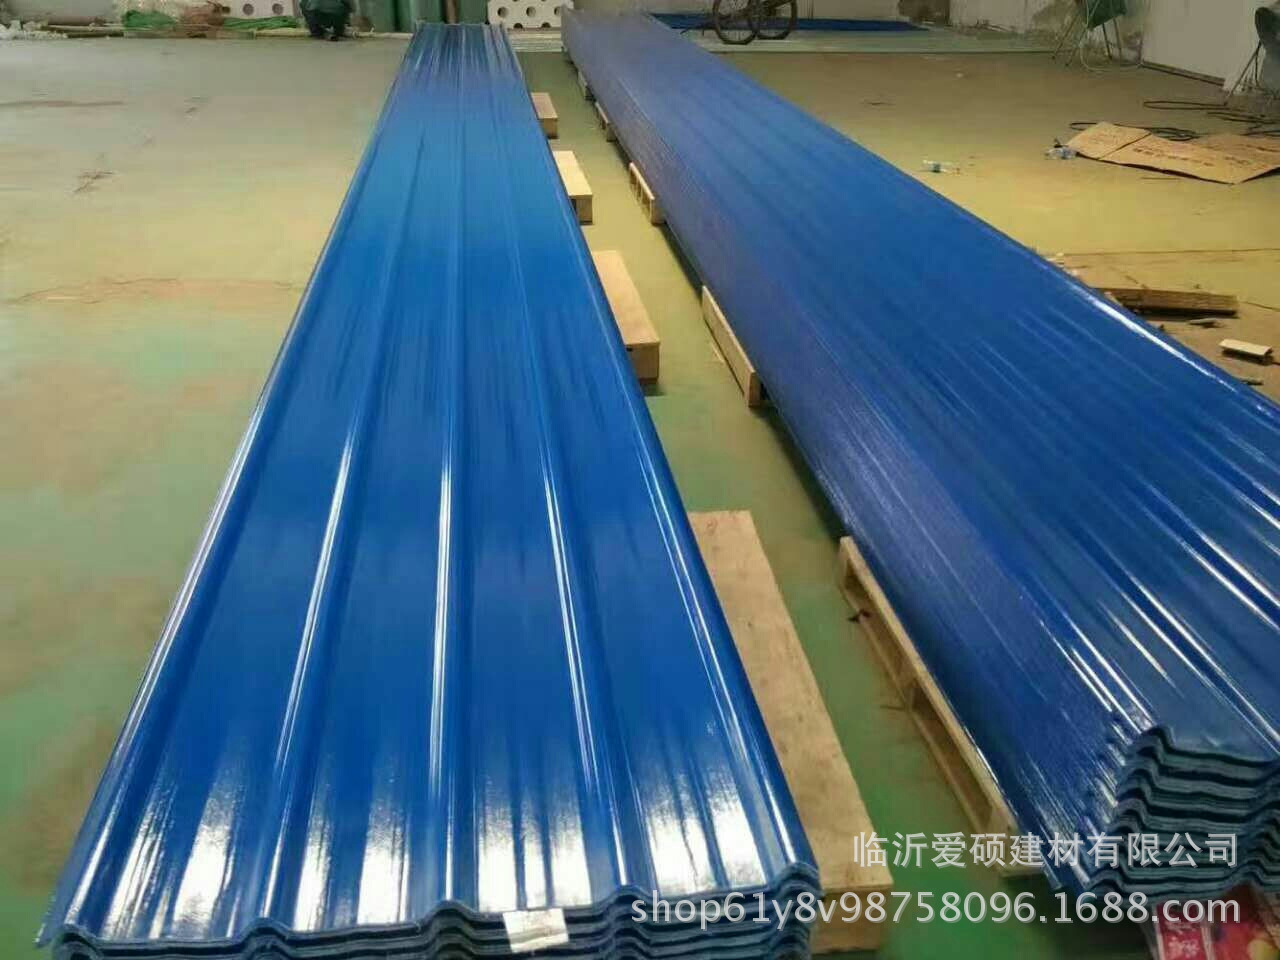 临沂1130梯型防腐屋面瓦厂家 蓝色PVC塑钢瓦批发价格示例图10